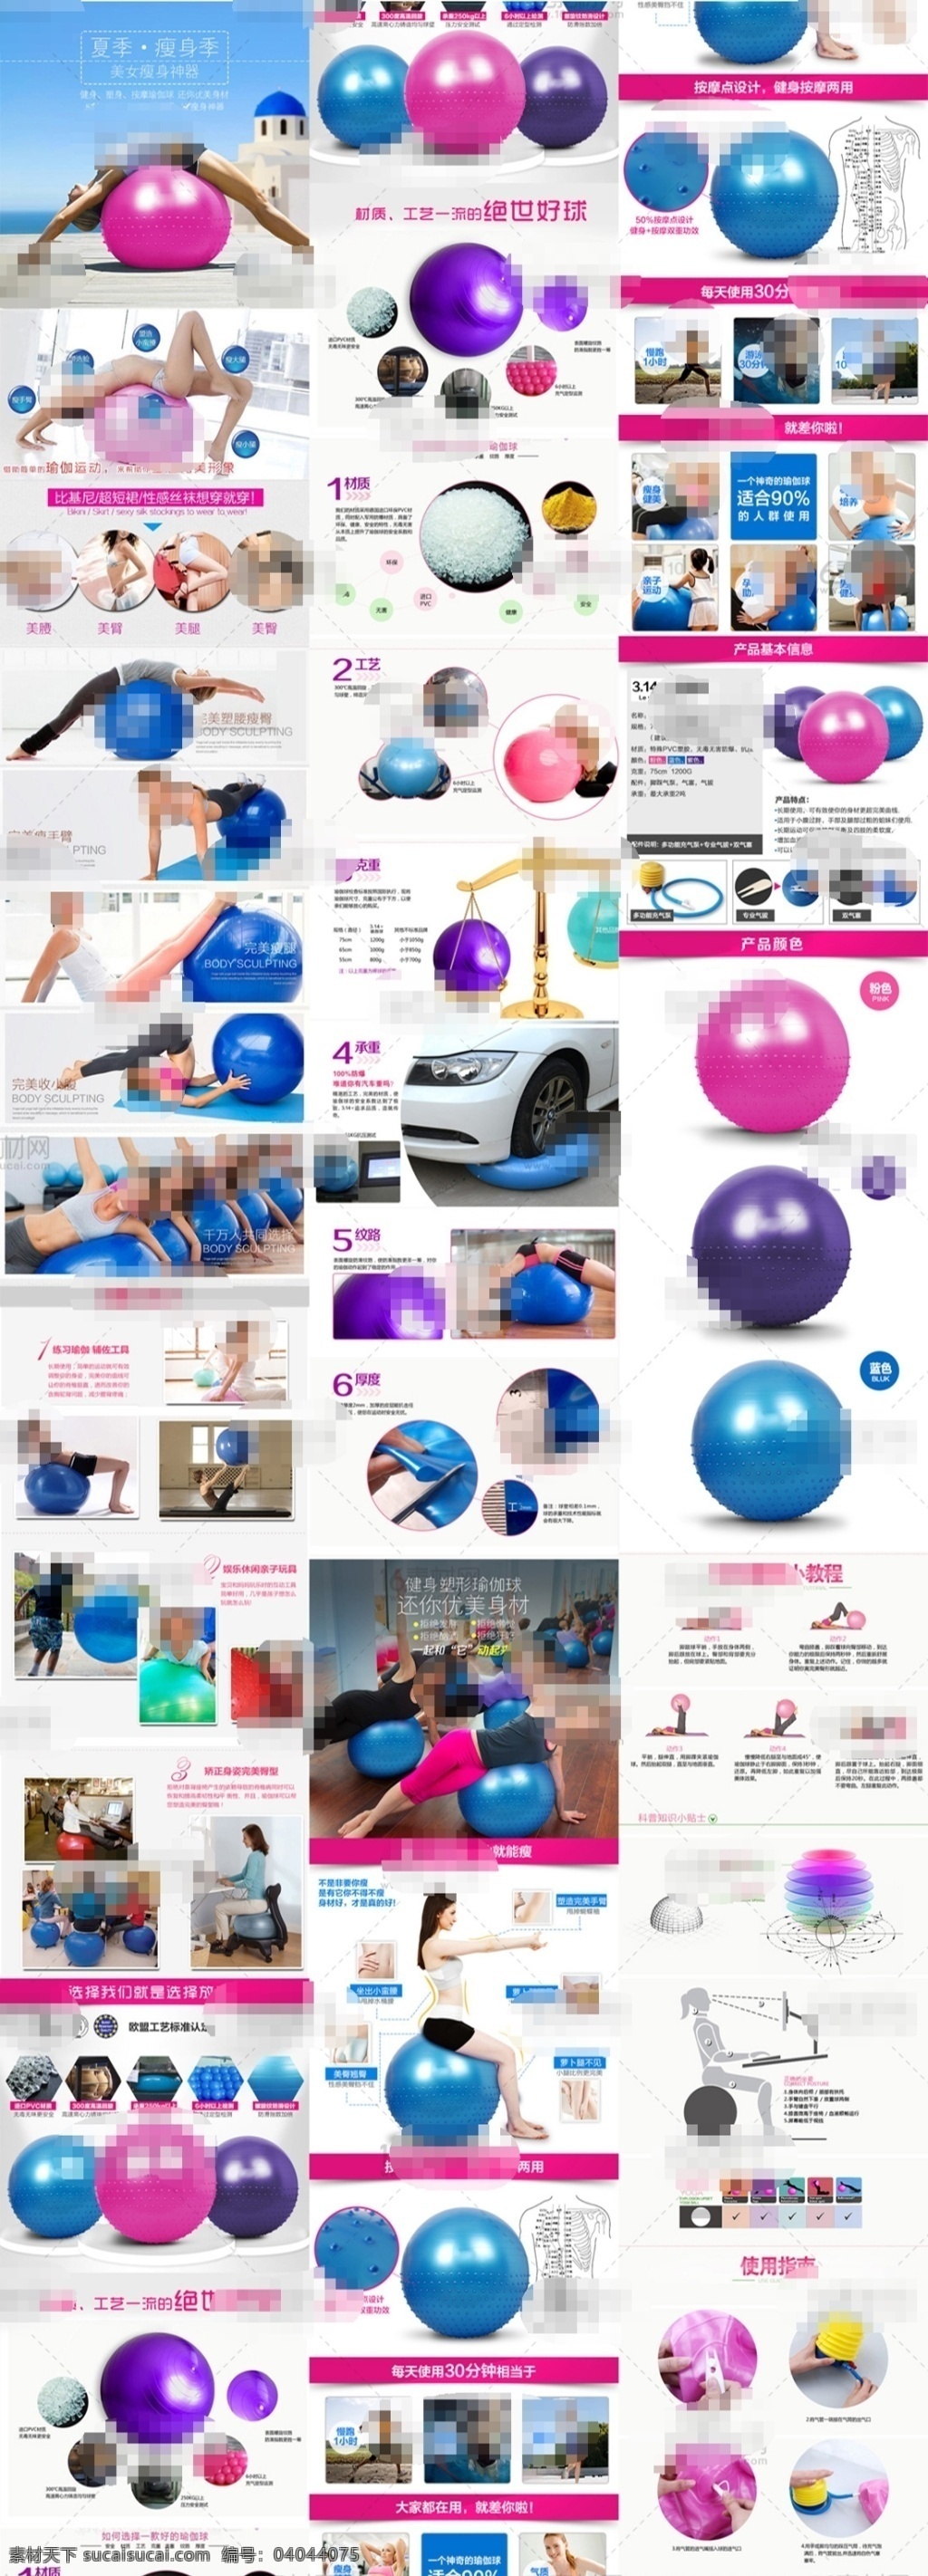 彩色 淘宝 瑜伽 球 详情 页 分层 天猫 瑜伽球促销 瑜伽球描述 练瑜伽 瑜伽球广告 锻炼身体 弹性 训练 绝世好球